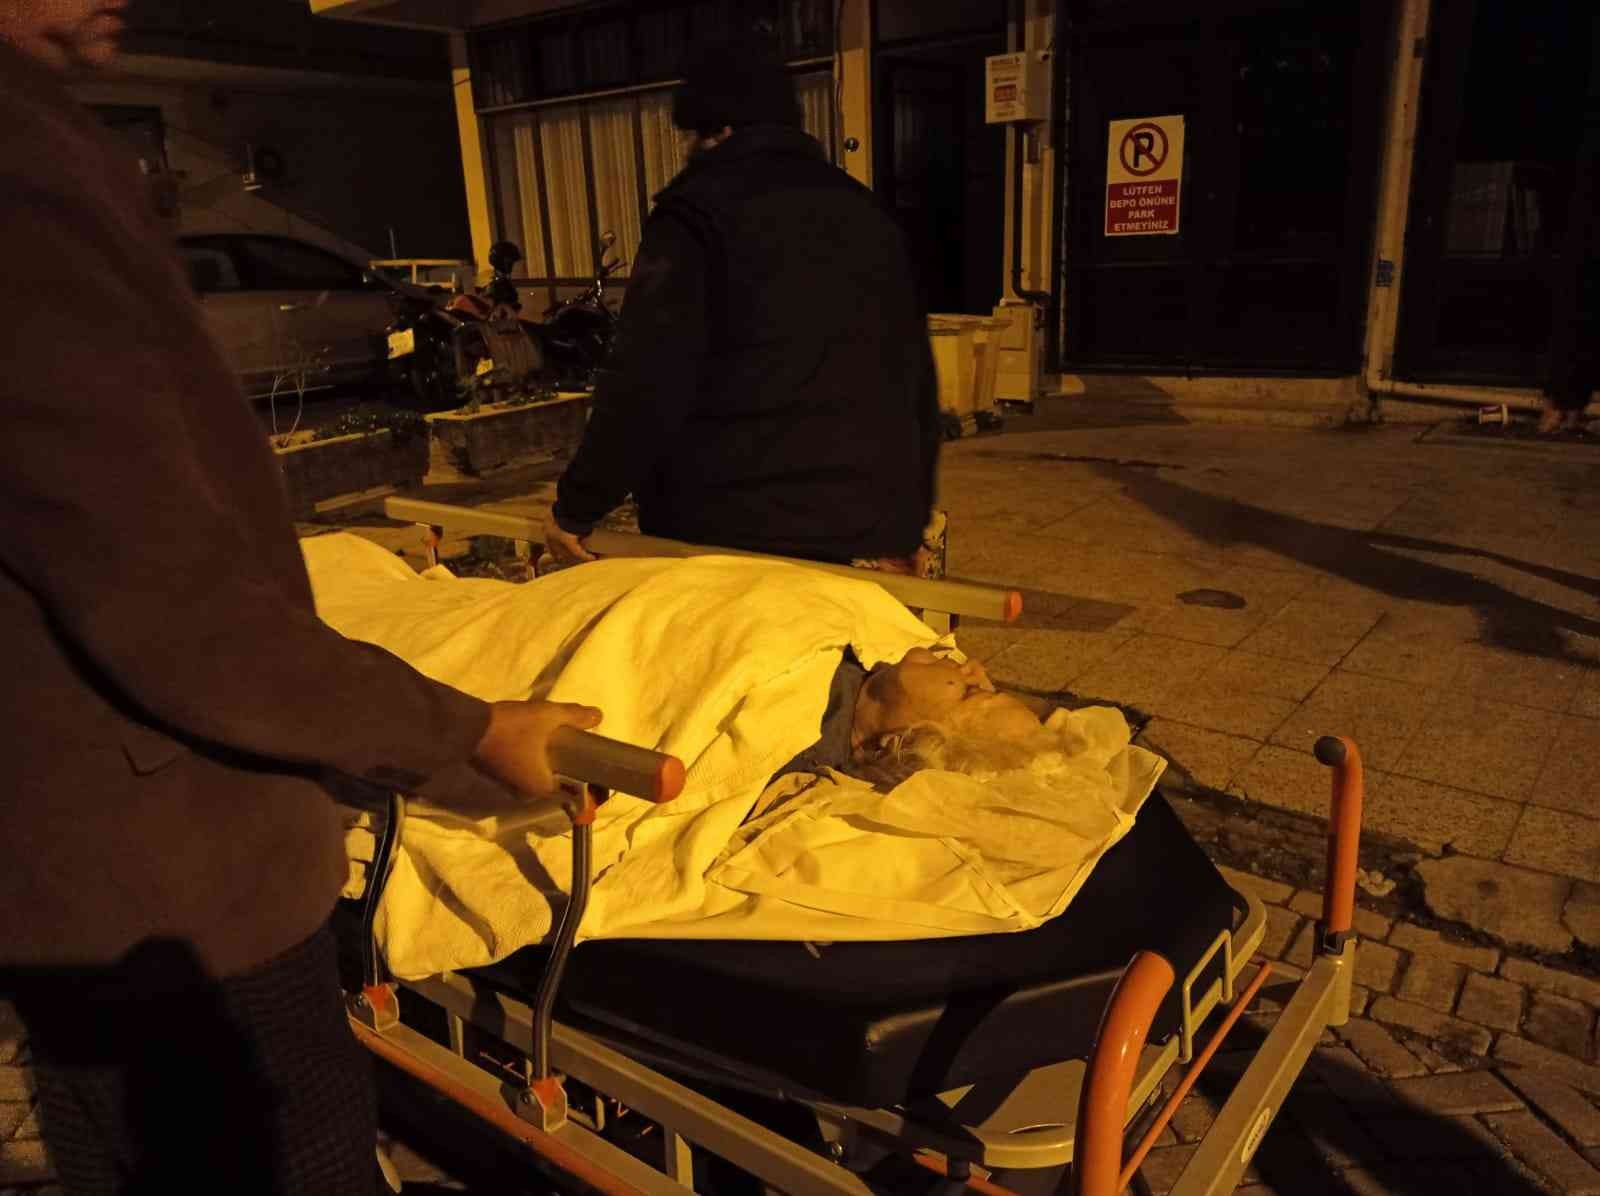 80 yaşındaki hasta sokaklarda sedyeyle taşındı #izmir